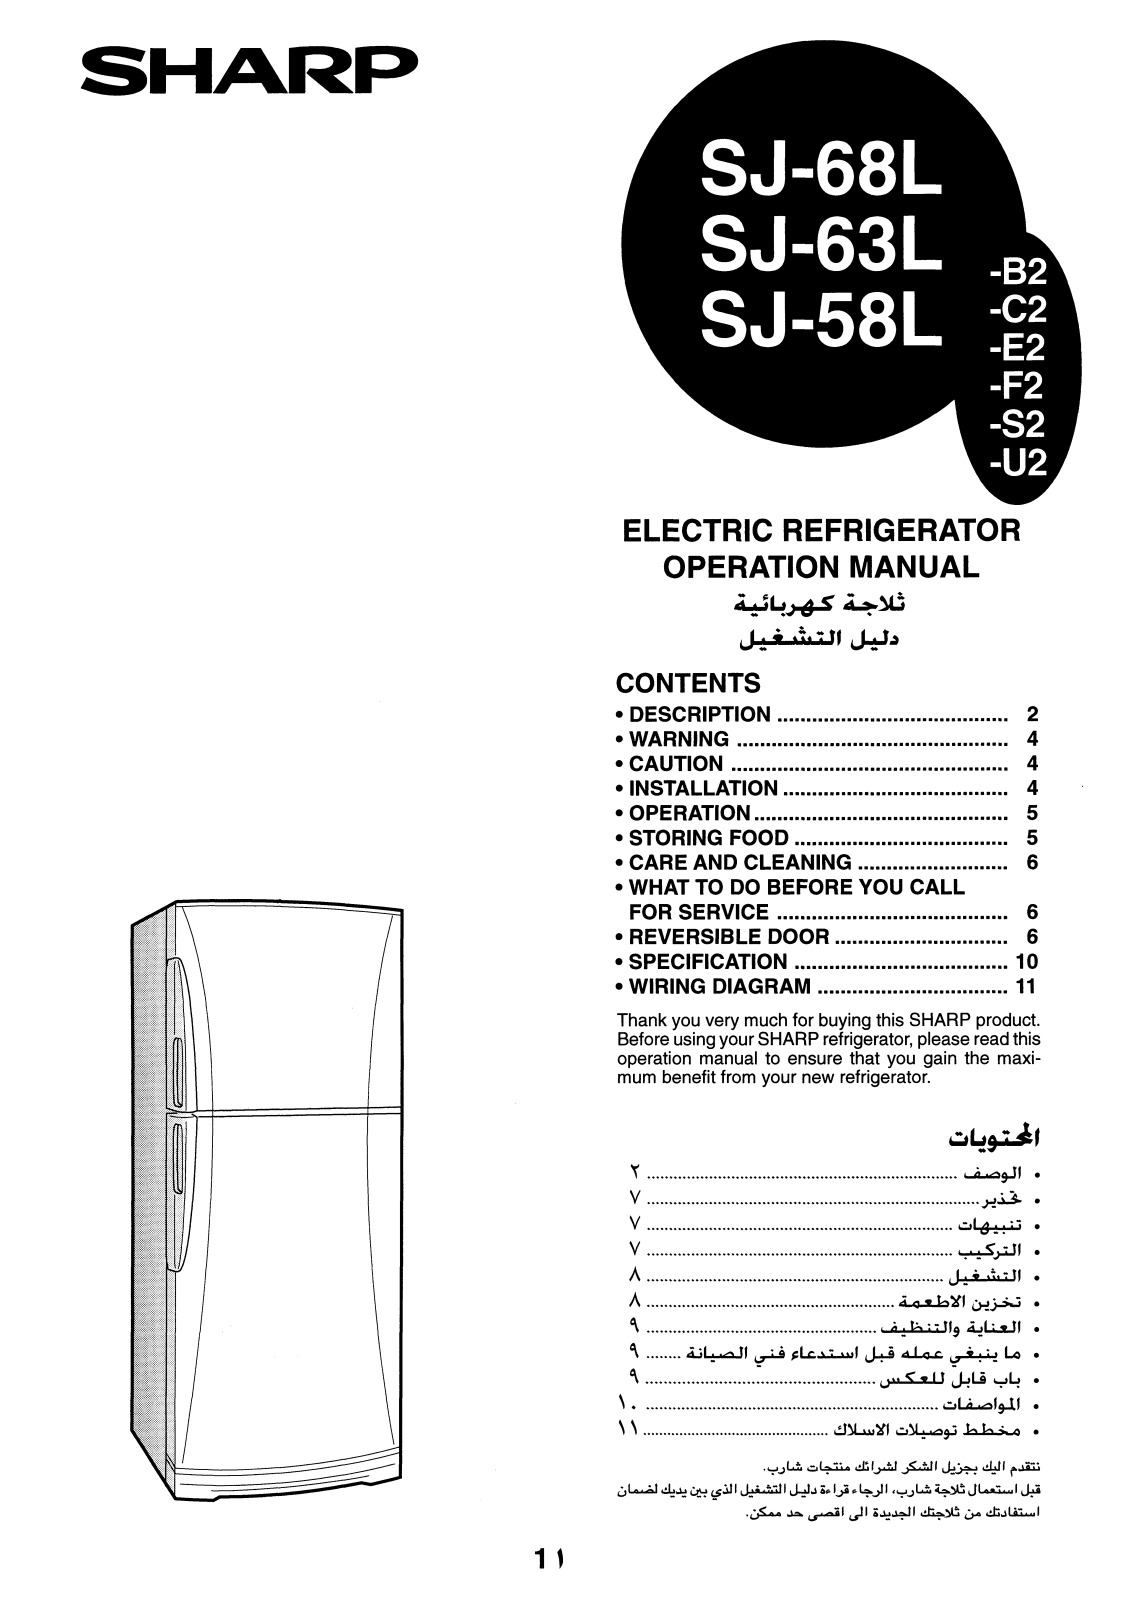 Sharp SJ-68L, SJ-58L, SJ-63L Manual